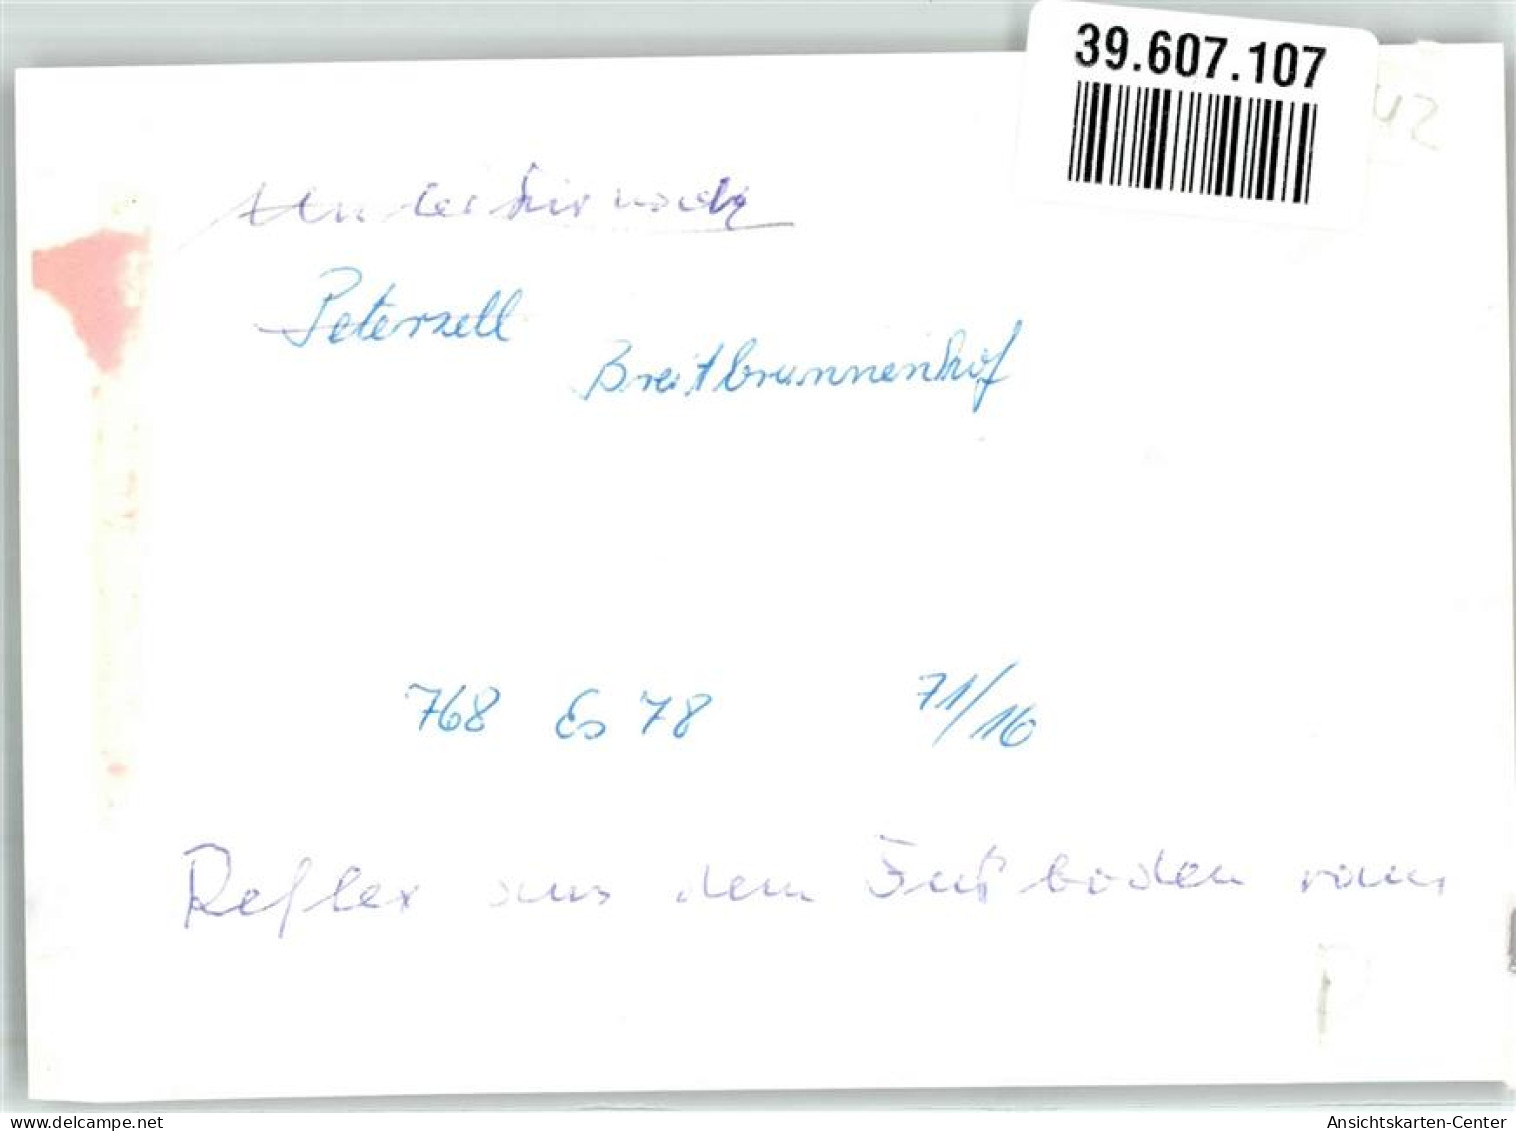 39607107 - Unterkirnach - Villingen - Schwenningen